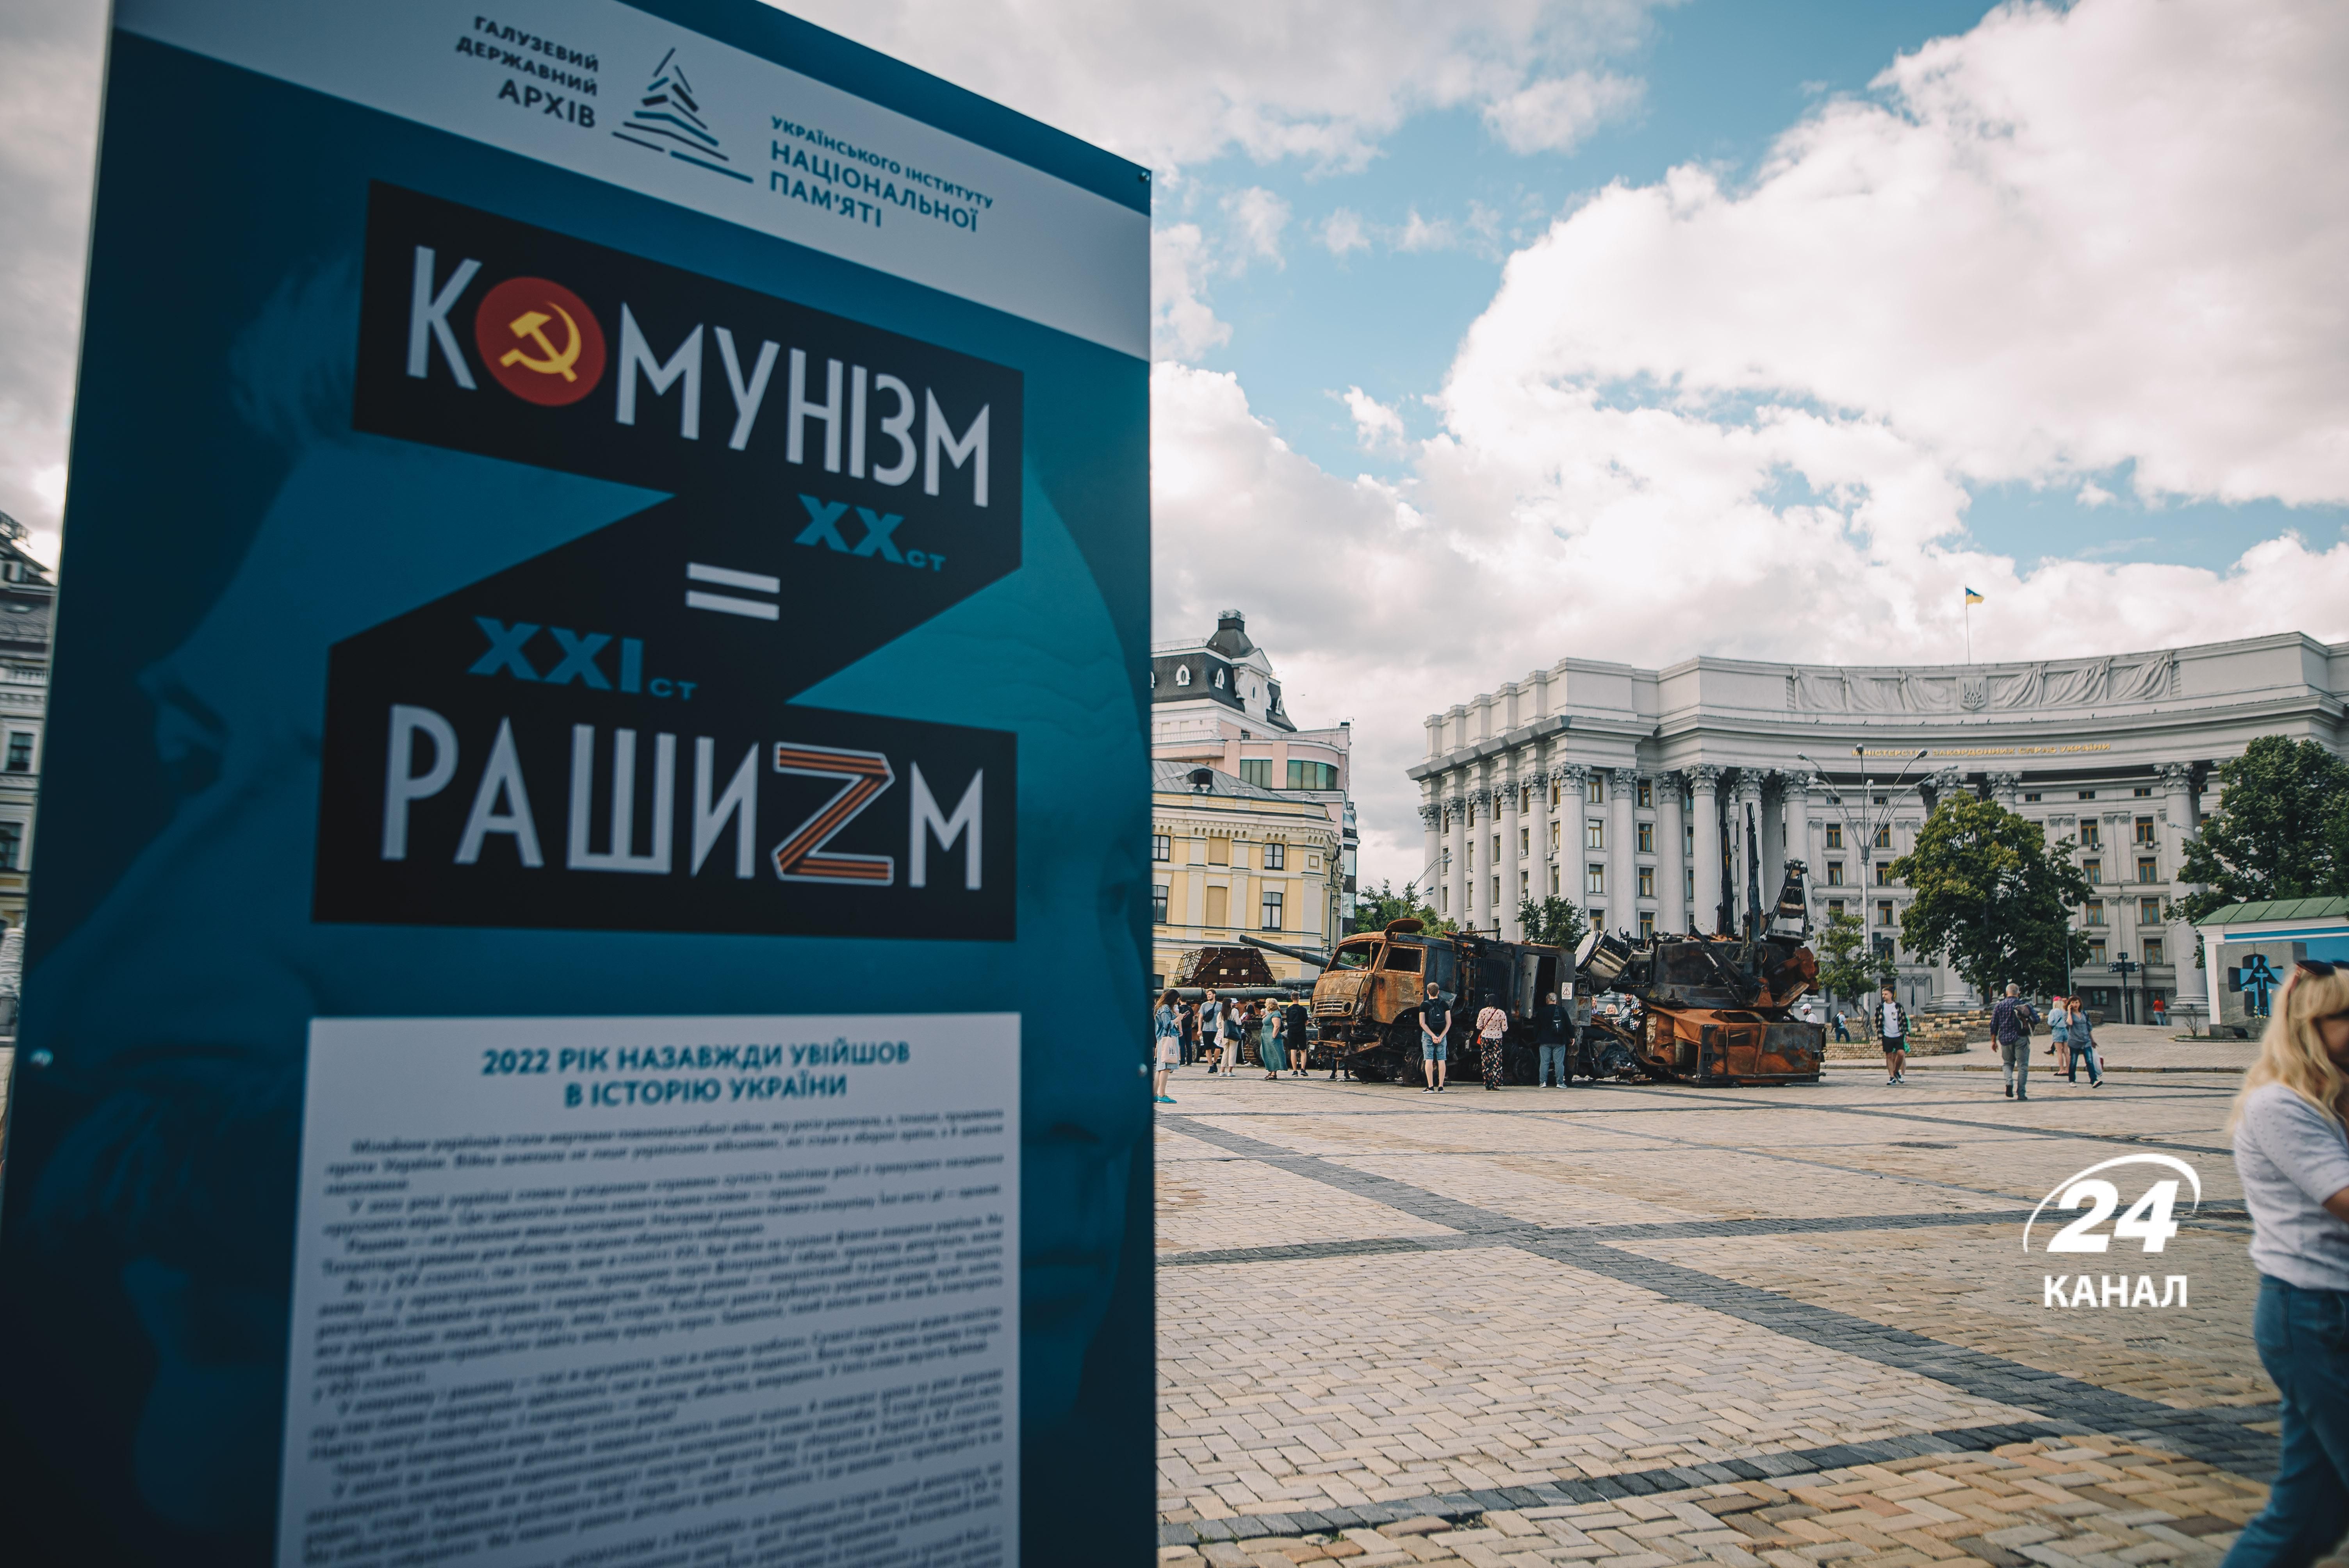 В Киеве открылась уличная выставка "Коммунизм=Рашизм": фоторепортаж 24 канала с места происшествия